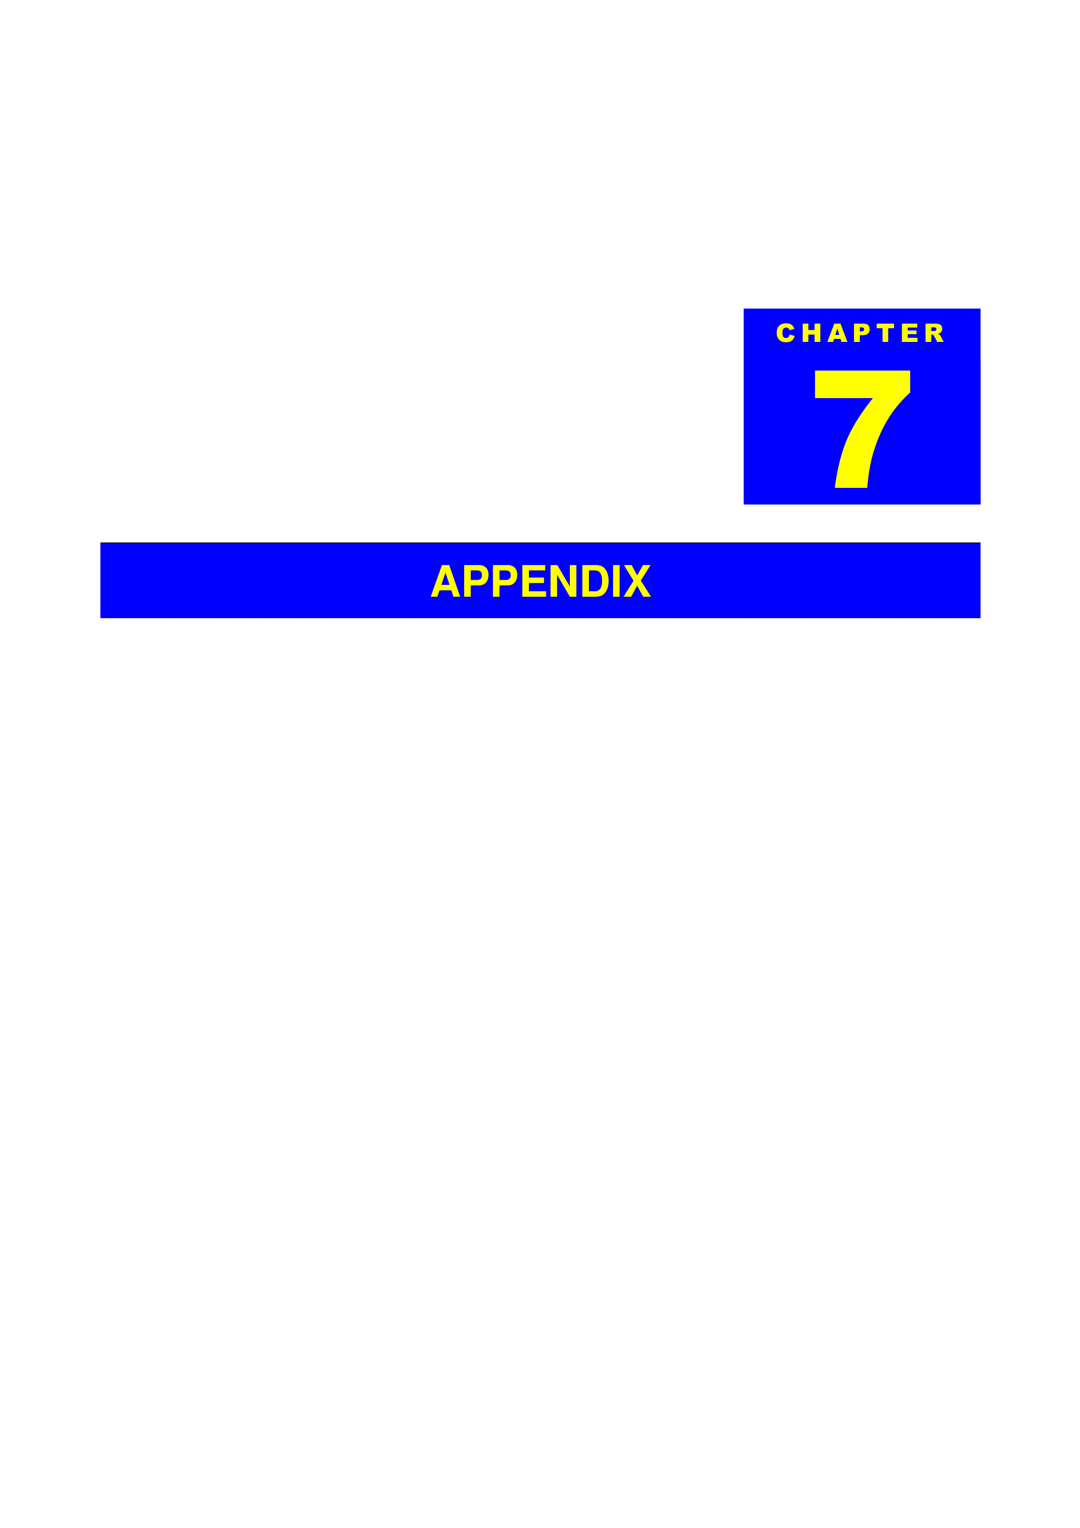 Epson 700, EX manual Appendix, + $ 3 